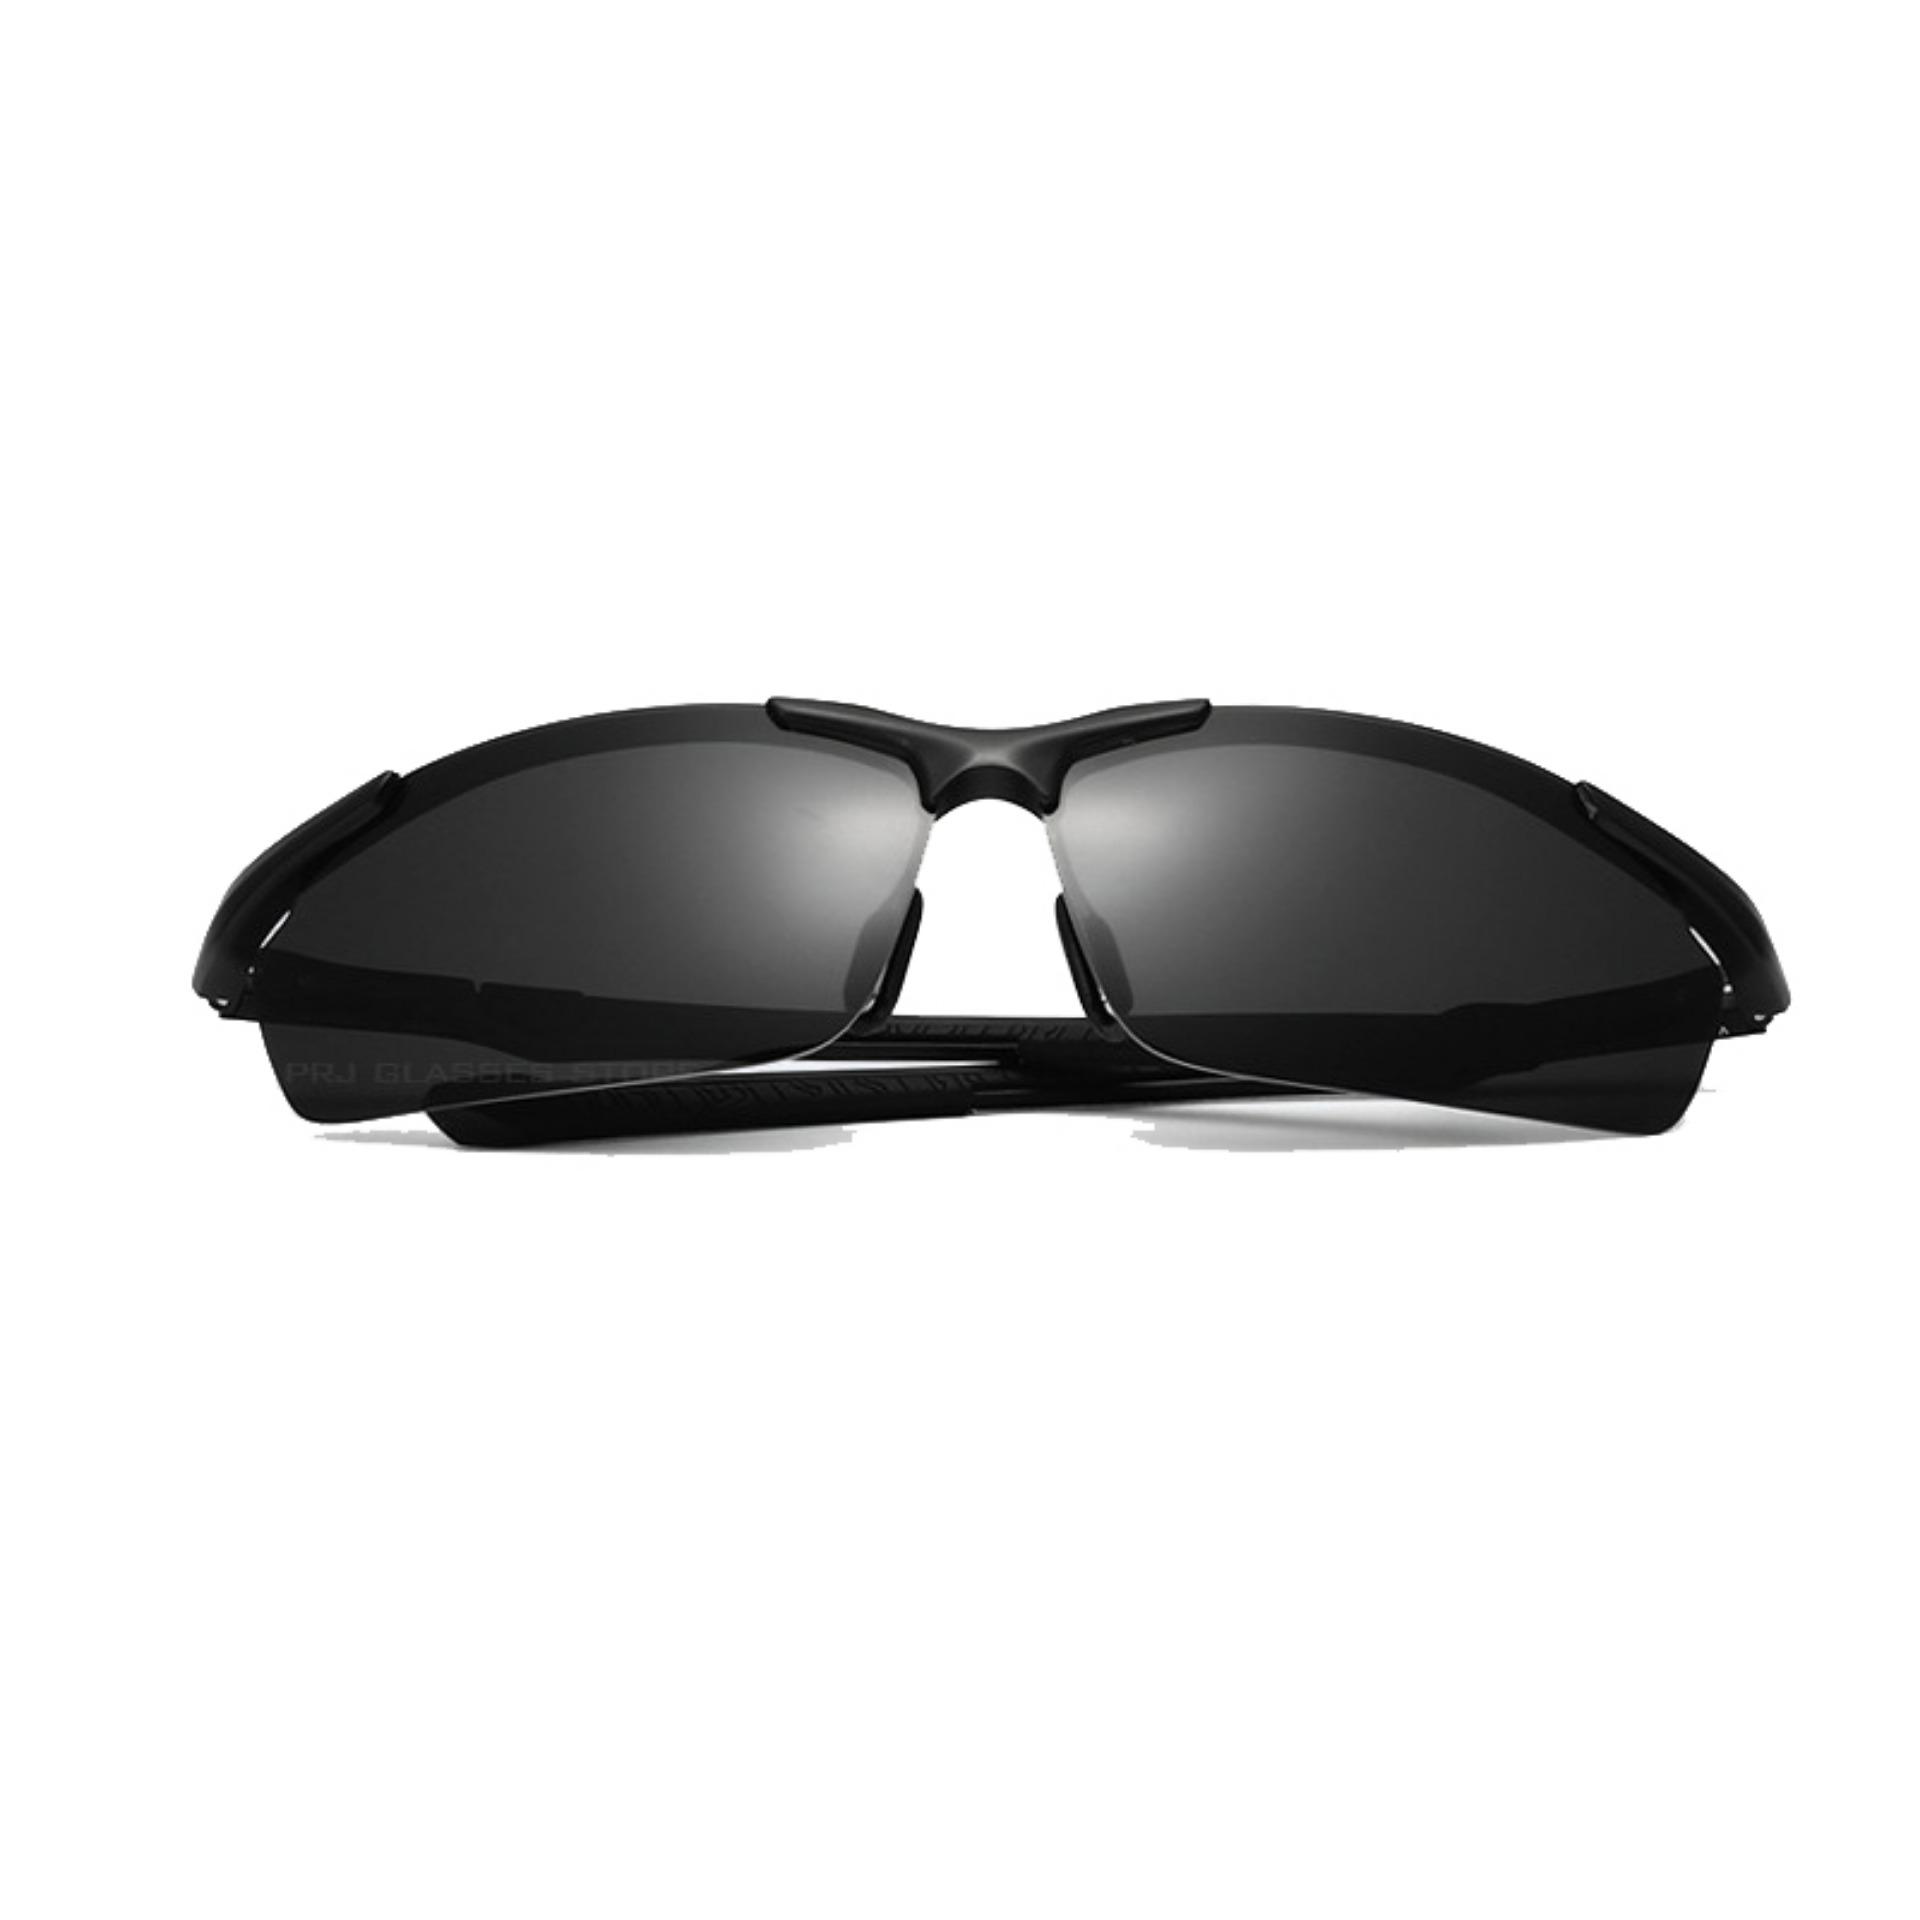 VEITHDIA Mens Sunglasses Polarized UV400 Lens Men Sun Glasses Aluminum Driving Glasses For Men 6592